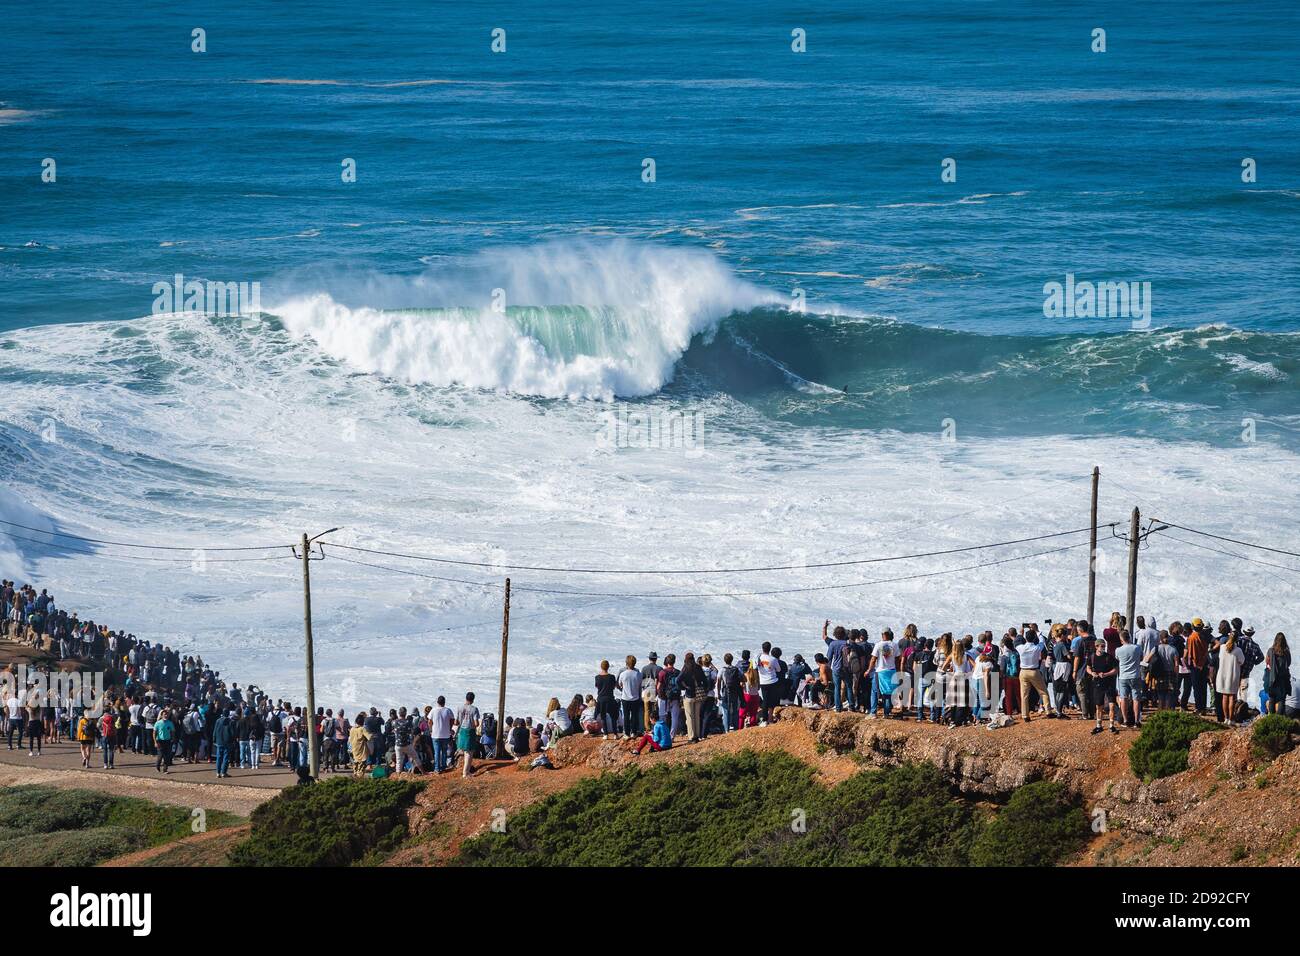 La gente guarda il surfer delle onde grandi che cavalcano l'onda gigante alla spiaggia di Praia do NNorte a Nazare, Portogallo. Foto Stock